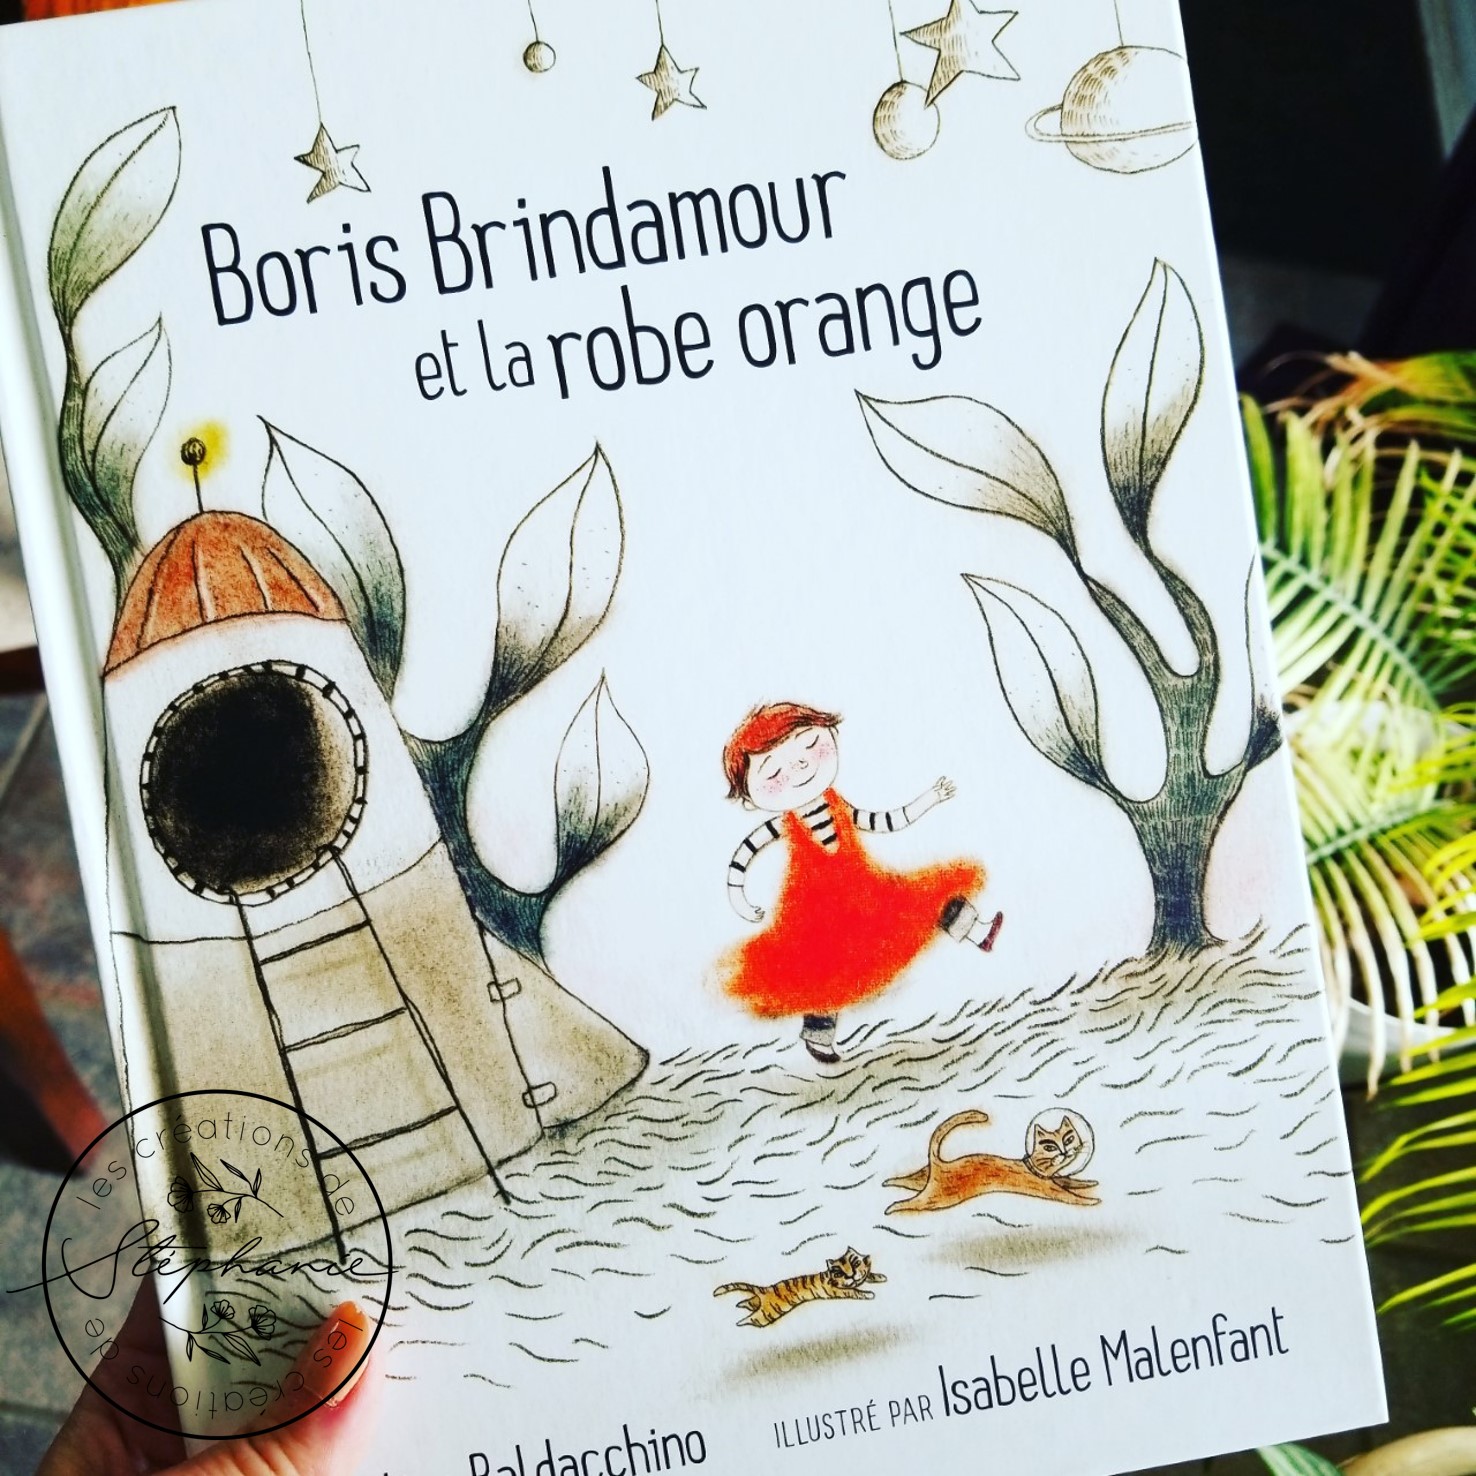 Boris Brindamour et la robe orange